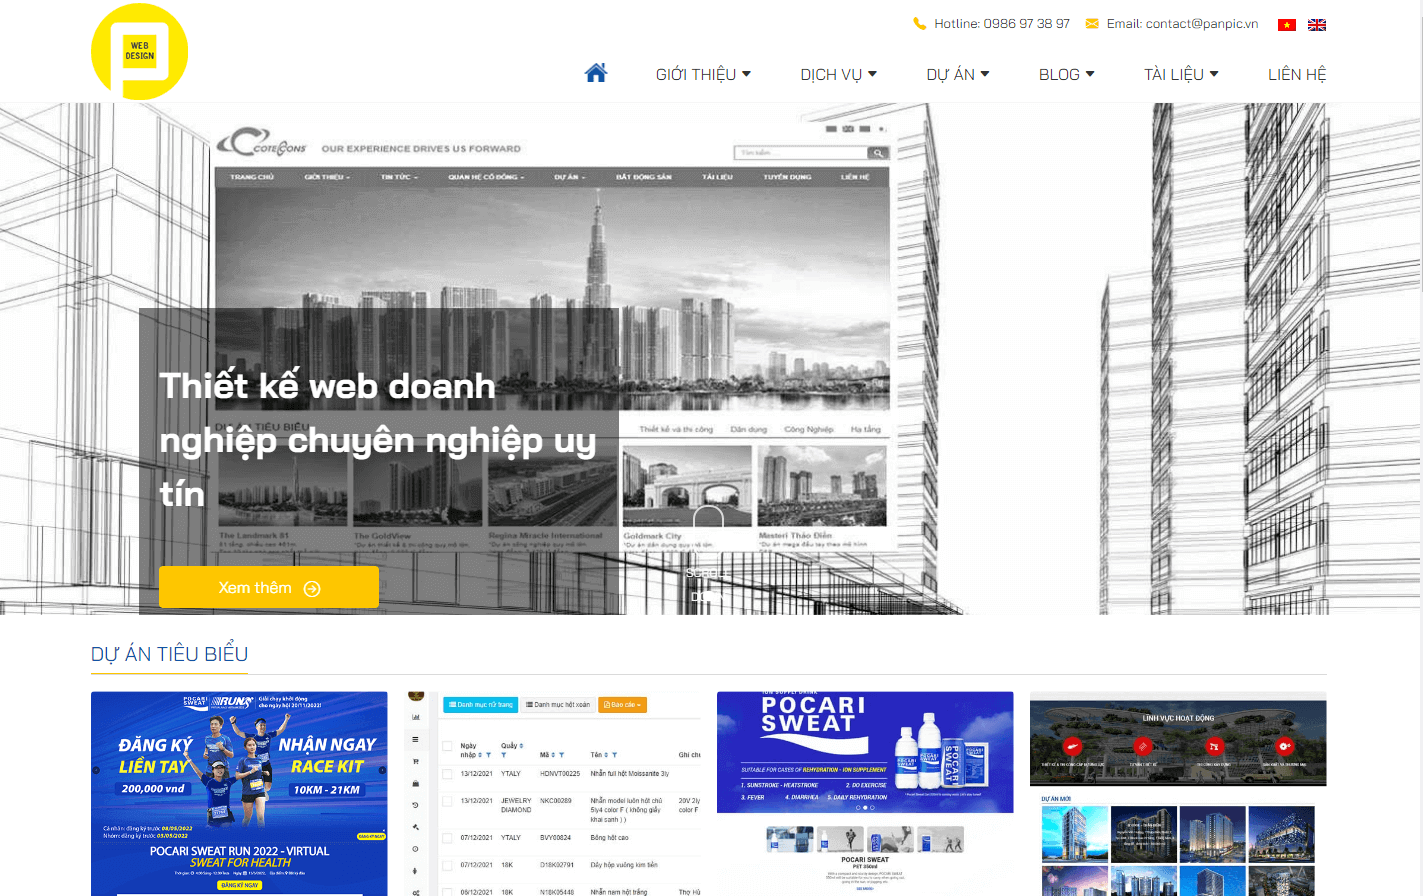 Thiết kế web tại Tây Ninh